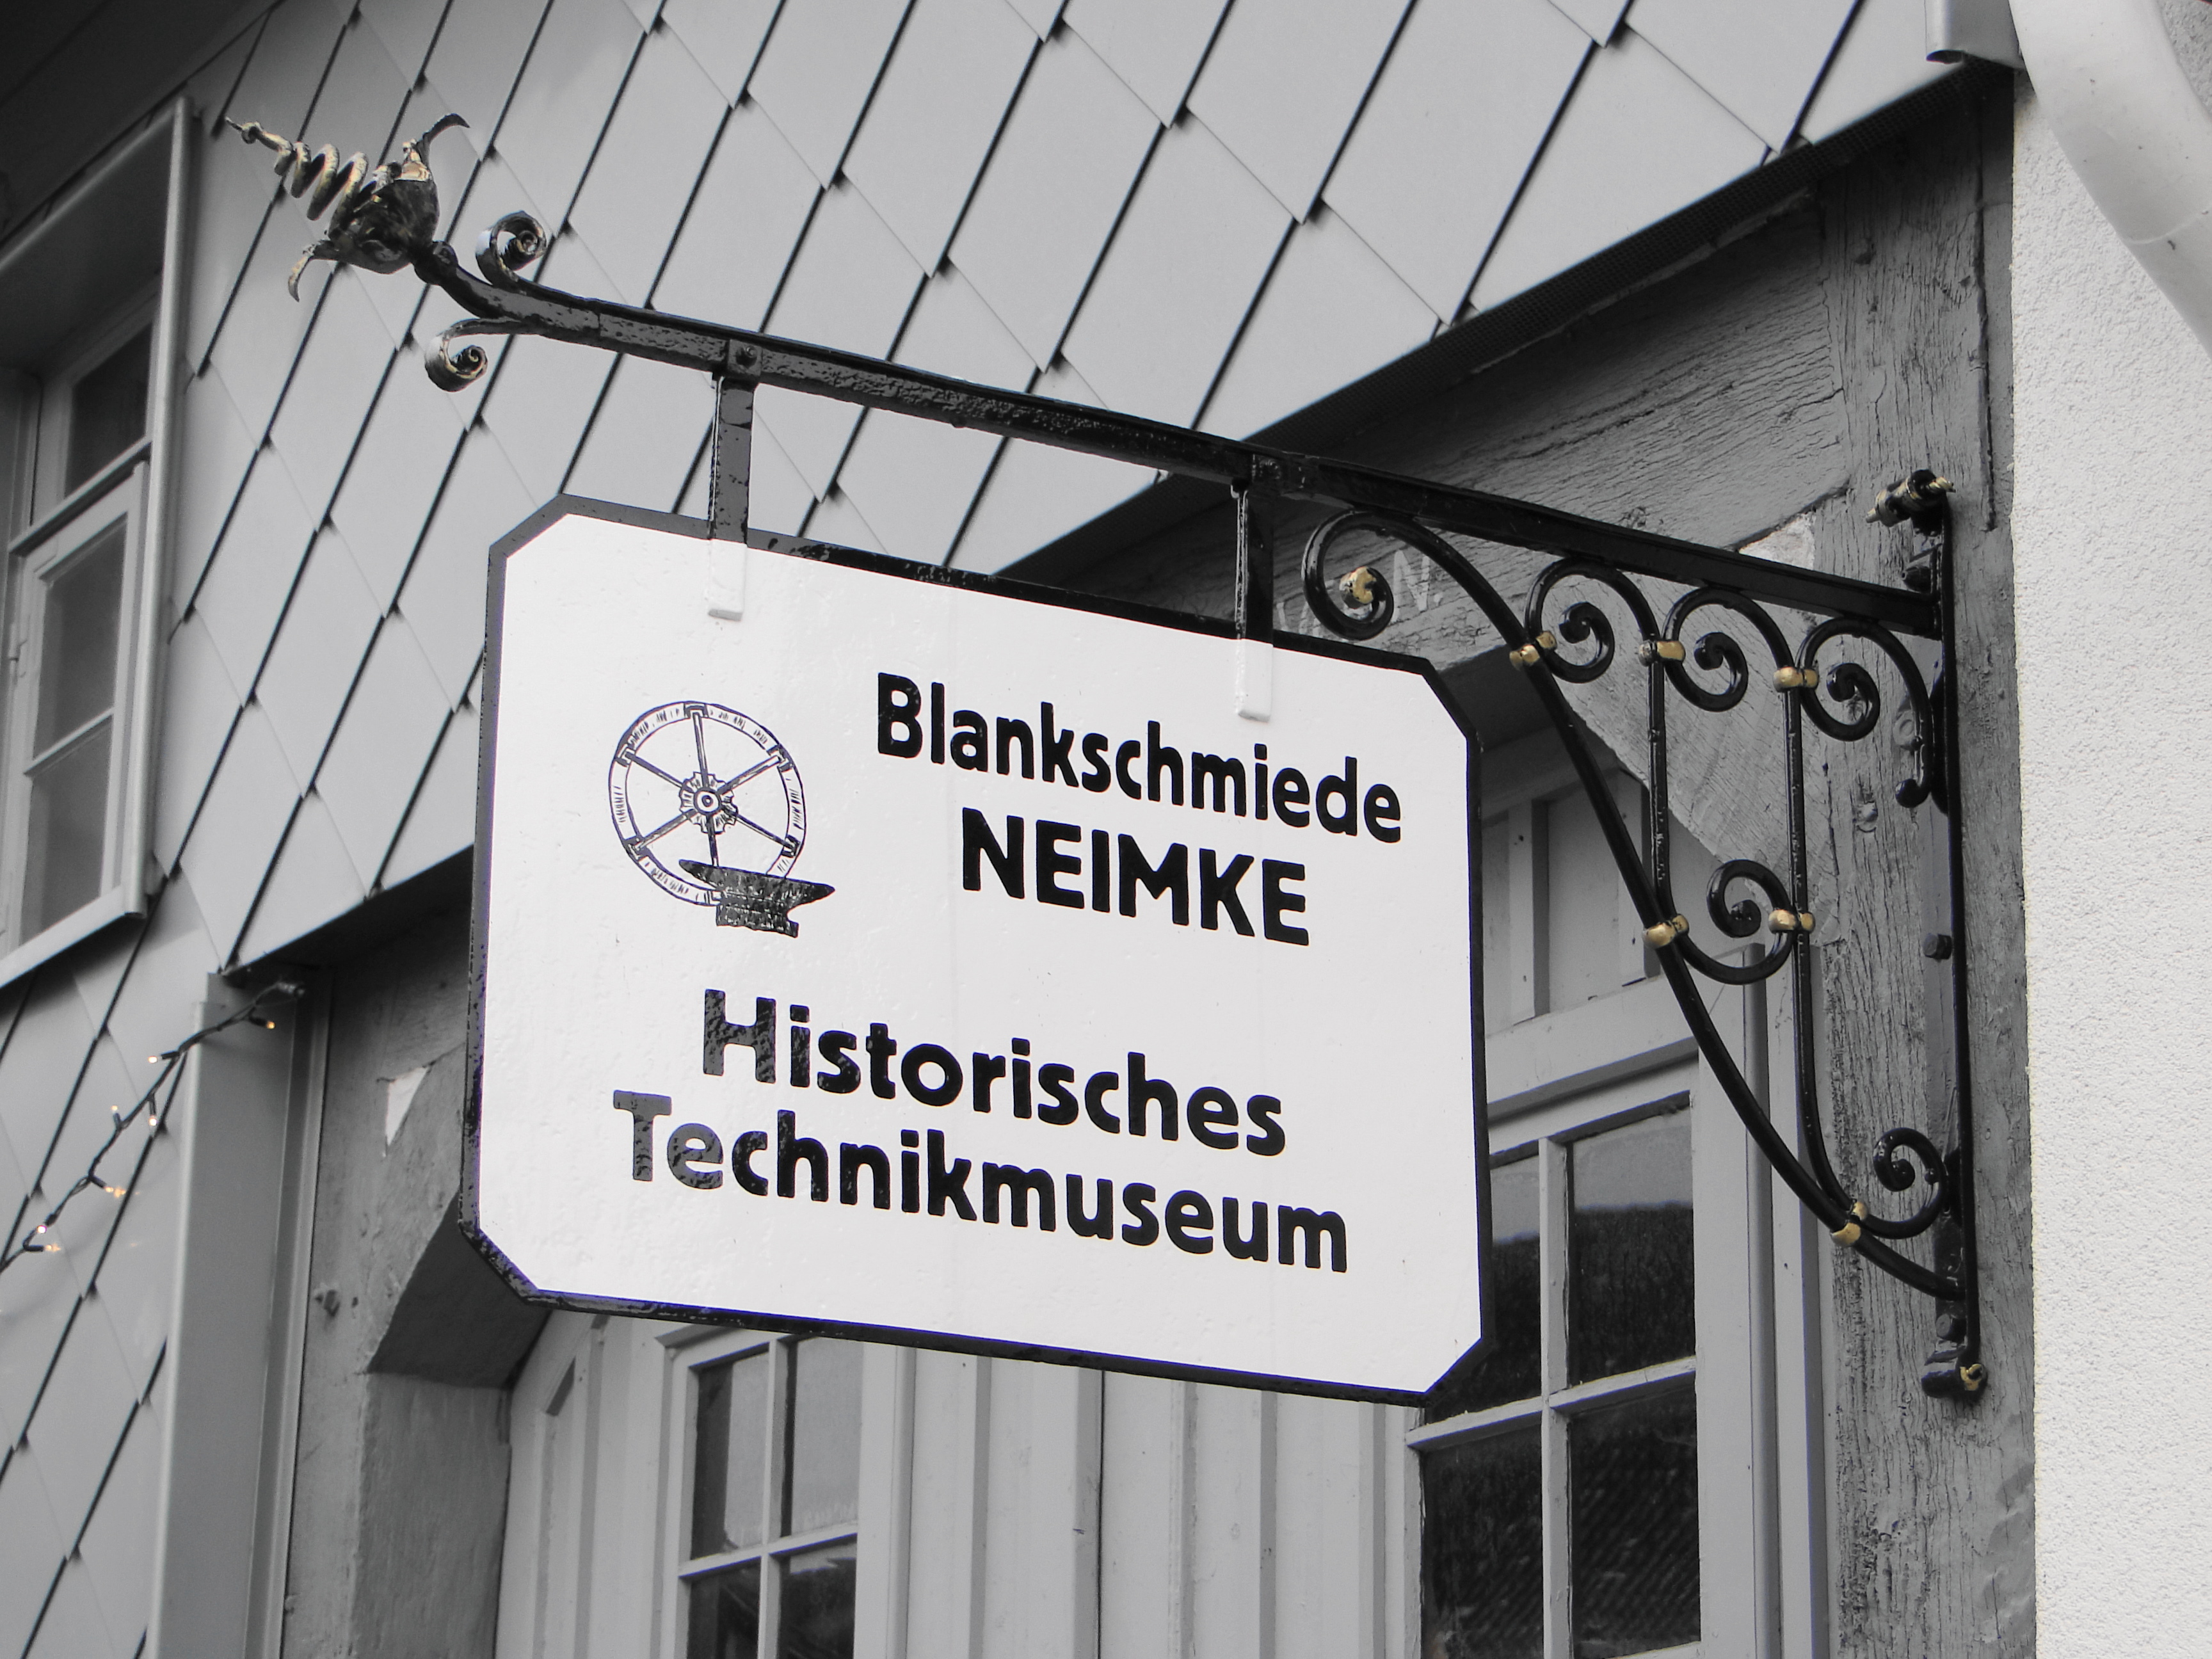 Historisches Technikmuseum Blankschmiede Neimke in Dassel